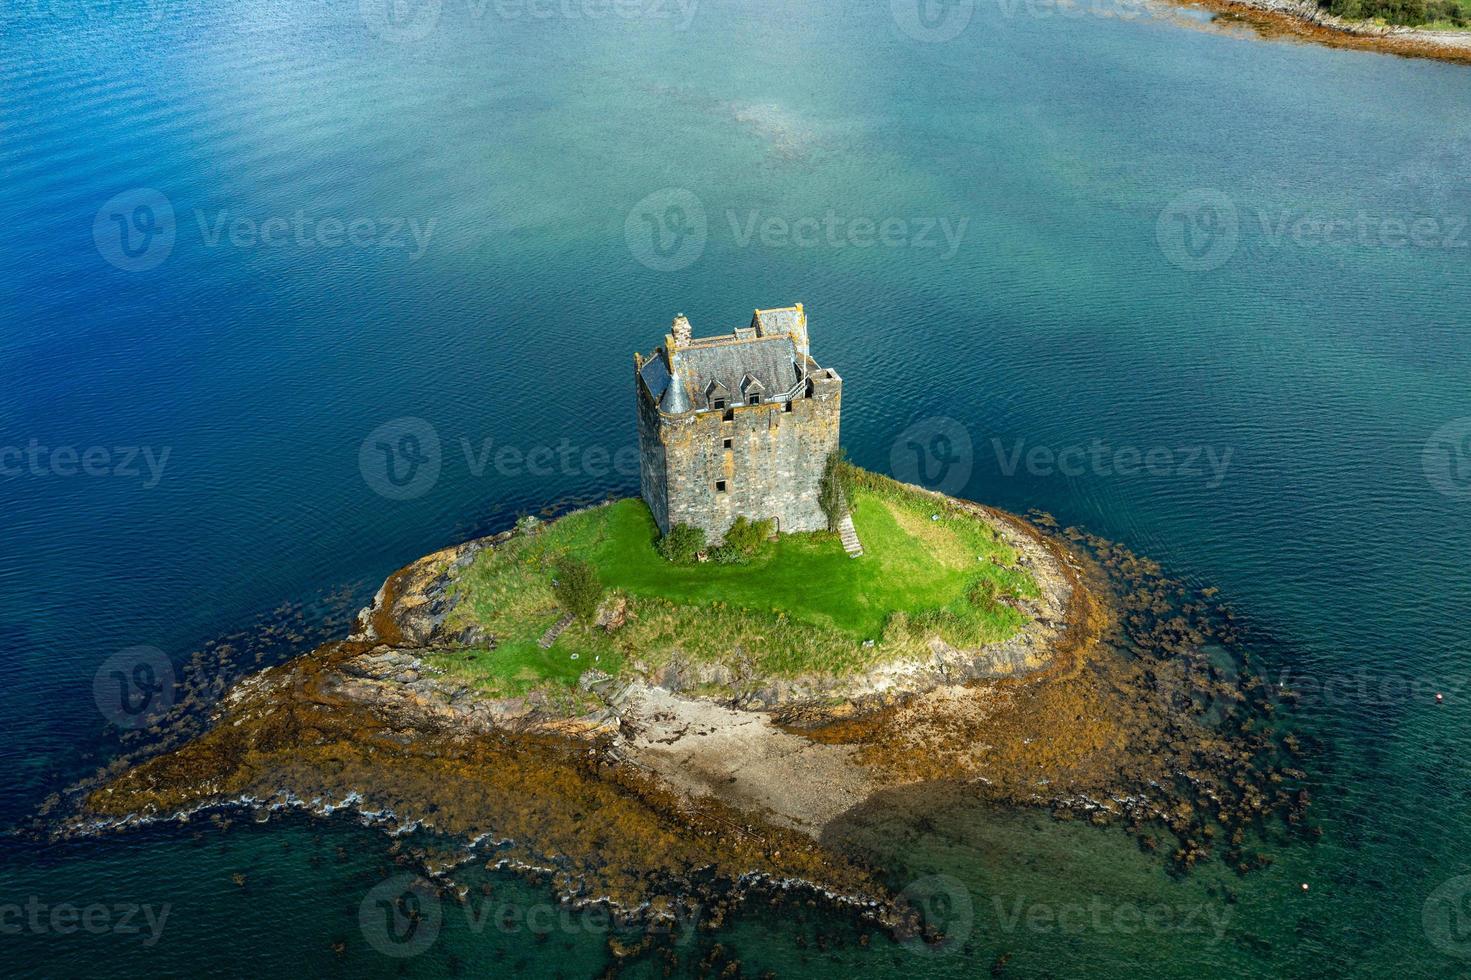 acosador del castillo, escocia, reino unido foto